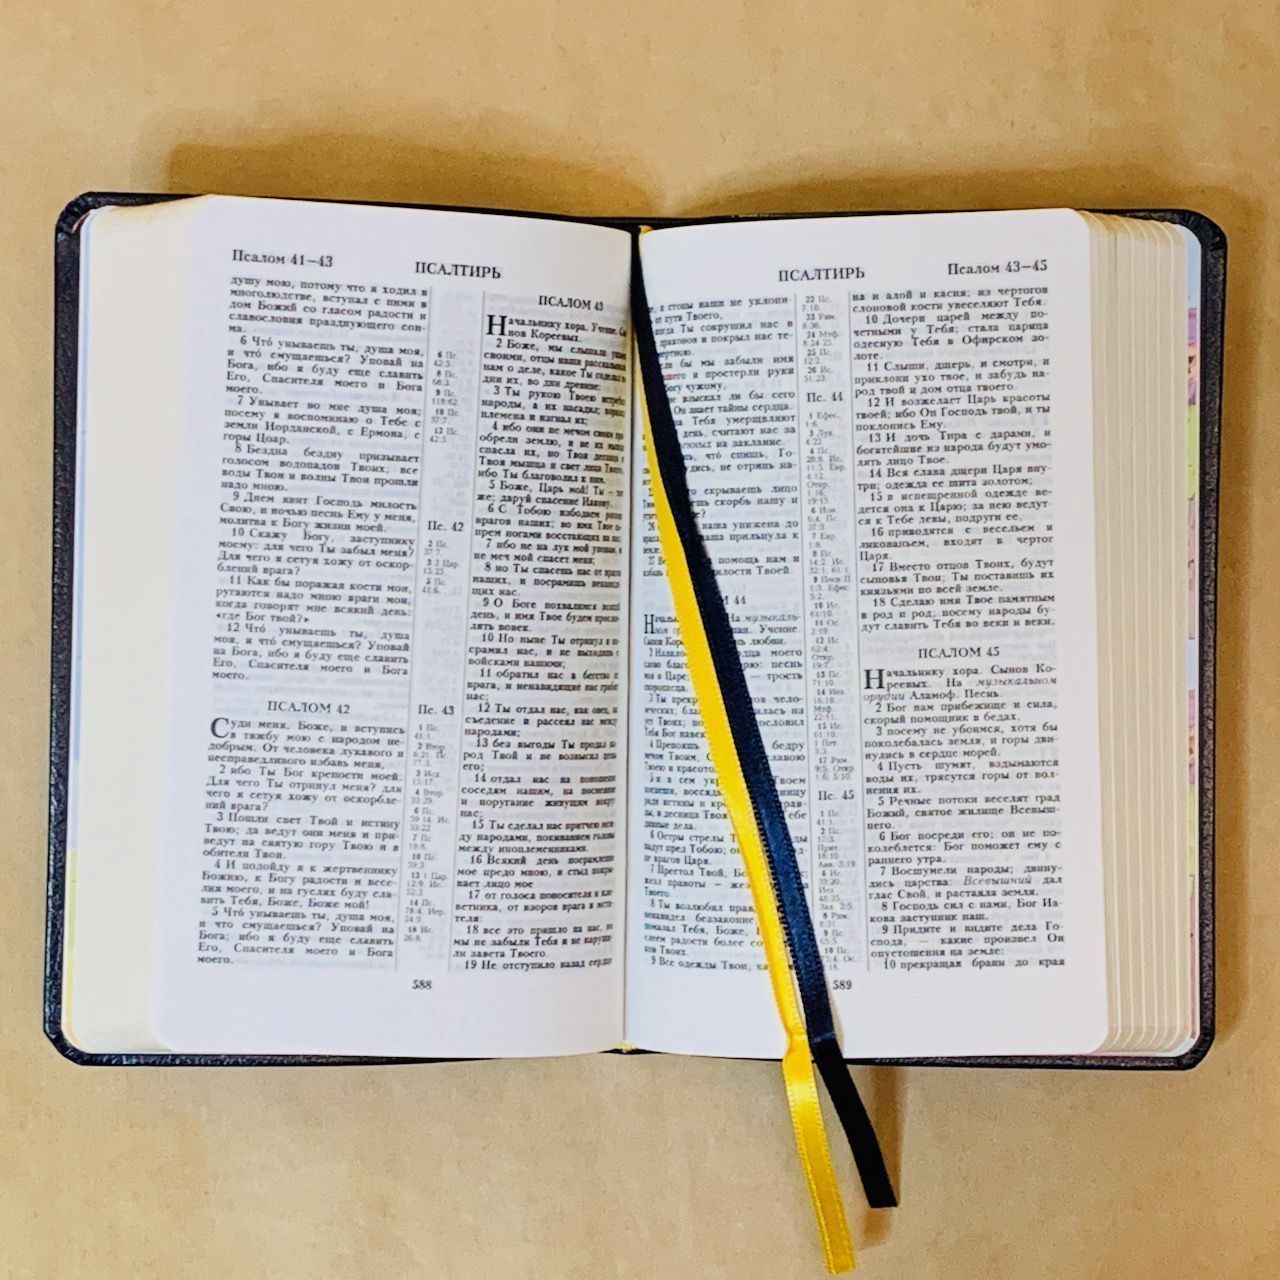 Библия 048 код D2  надпись "библия", кожаный переплет, цвет синий, формат 125*190 мм, золотой обрез, синодальный перевод, паралельные места по центру страницы, 2 закладки, шрифт 10-11 кегель, цветные карты